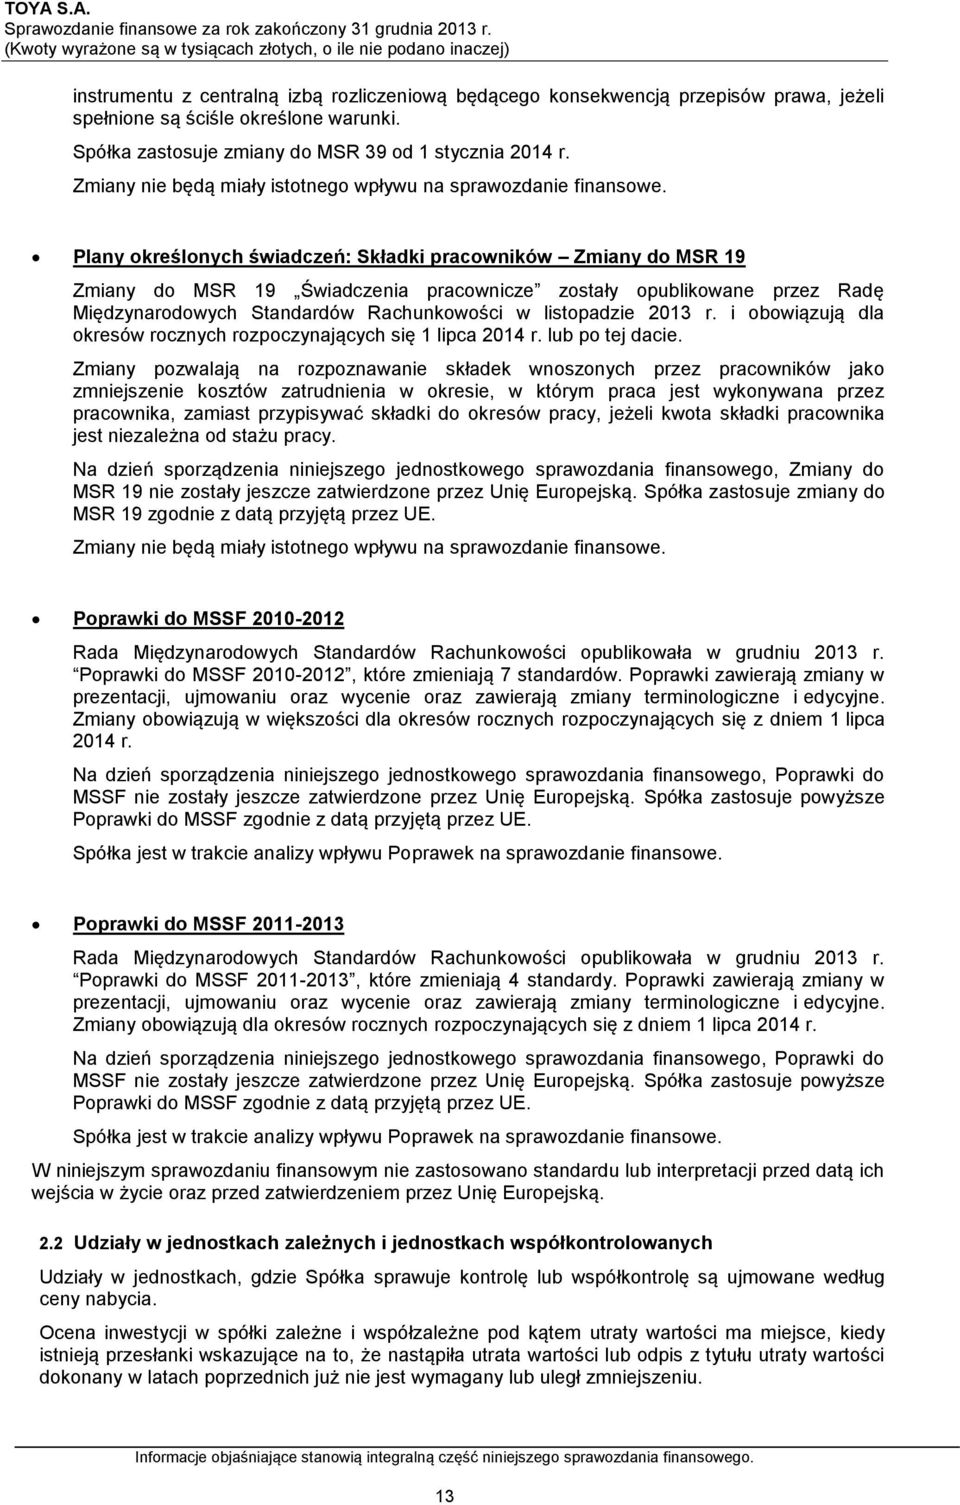 Plany określonych świadczeń: Składki pracowników Zmiany do MSR 19 Zmiany do MSR 19 Świadczenia pracownicze zostały opublikowane przez Radę Międzynarodowych Standardów Rachunkowości w listopadzie 2013